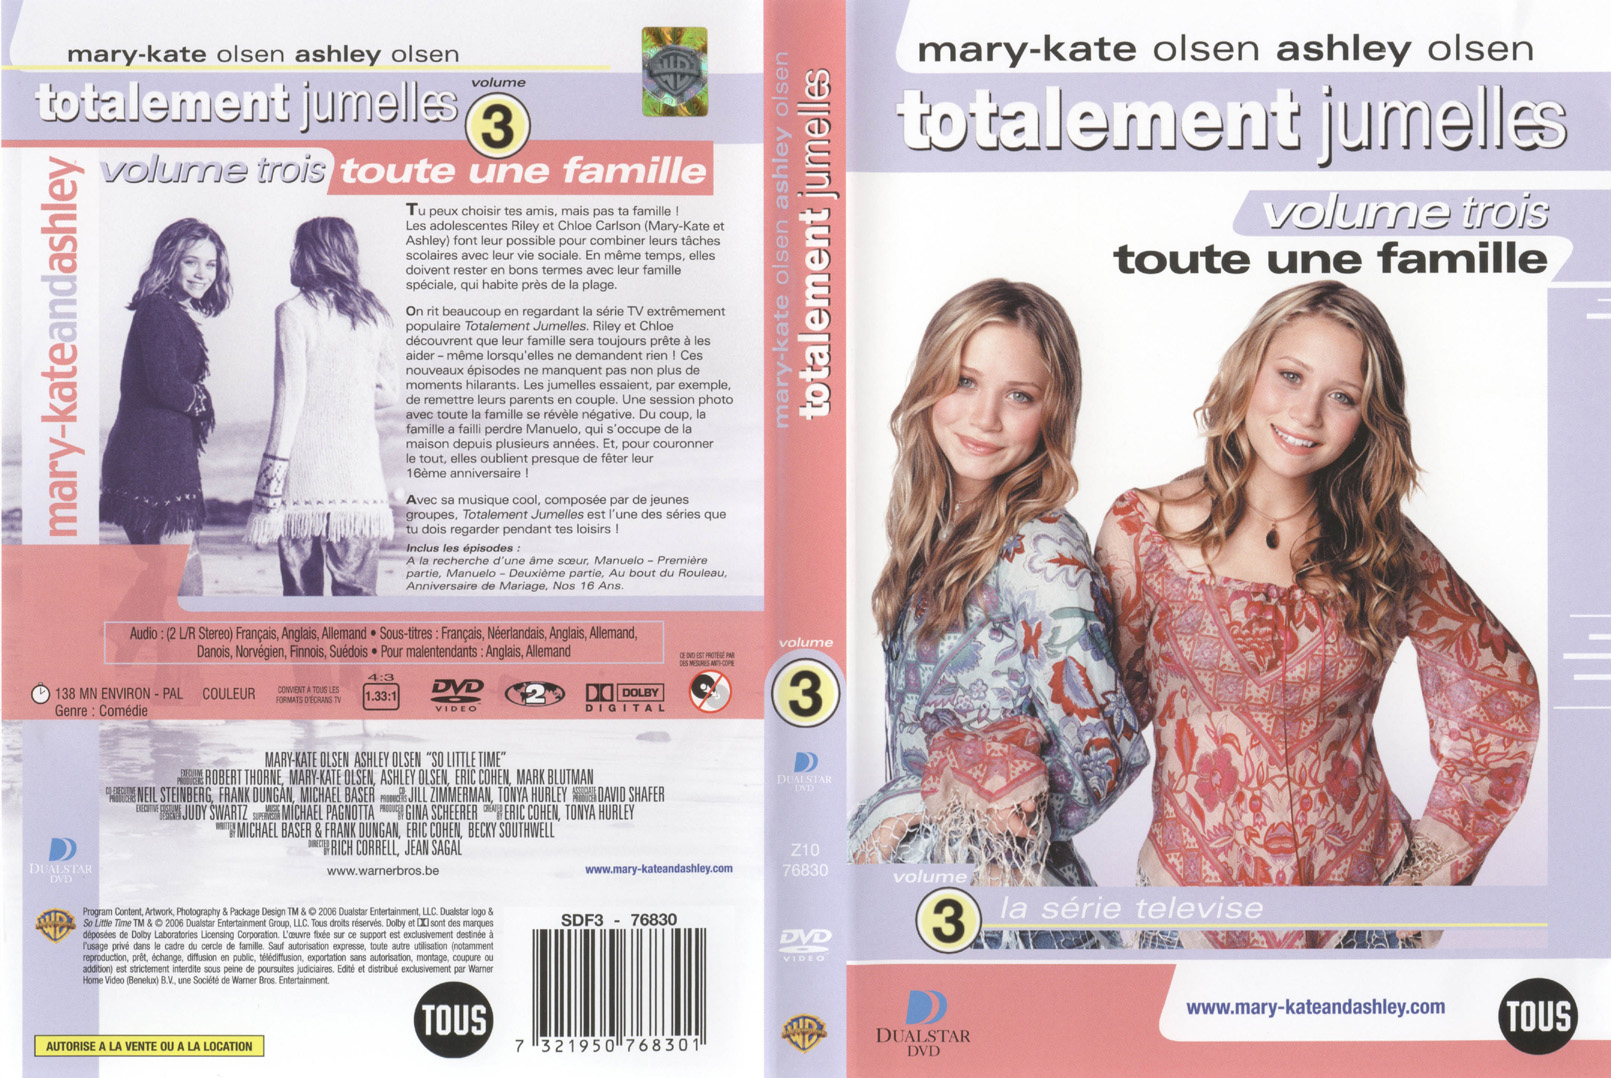 Jaquette DVD Totalement jumelles vol 3